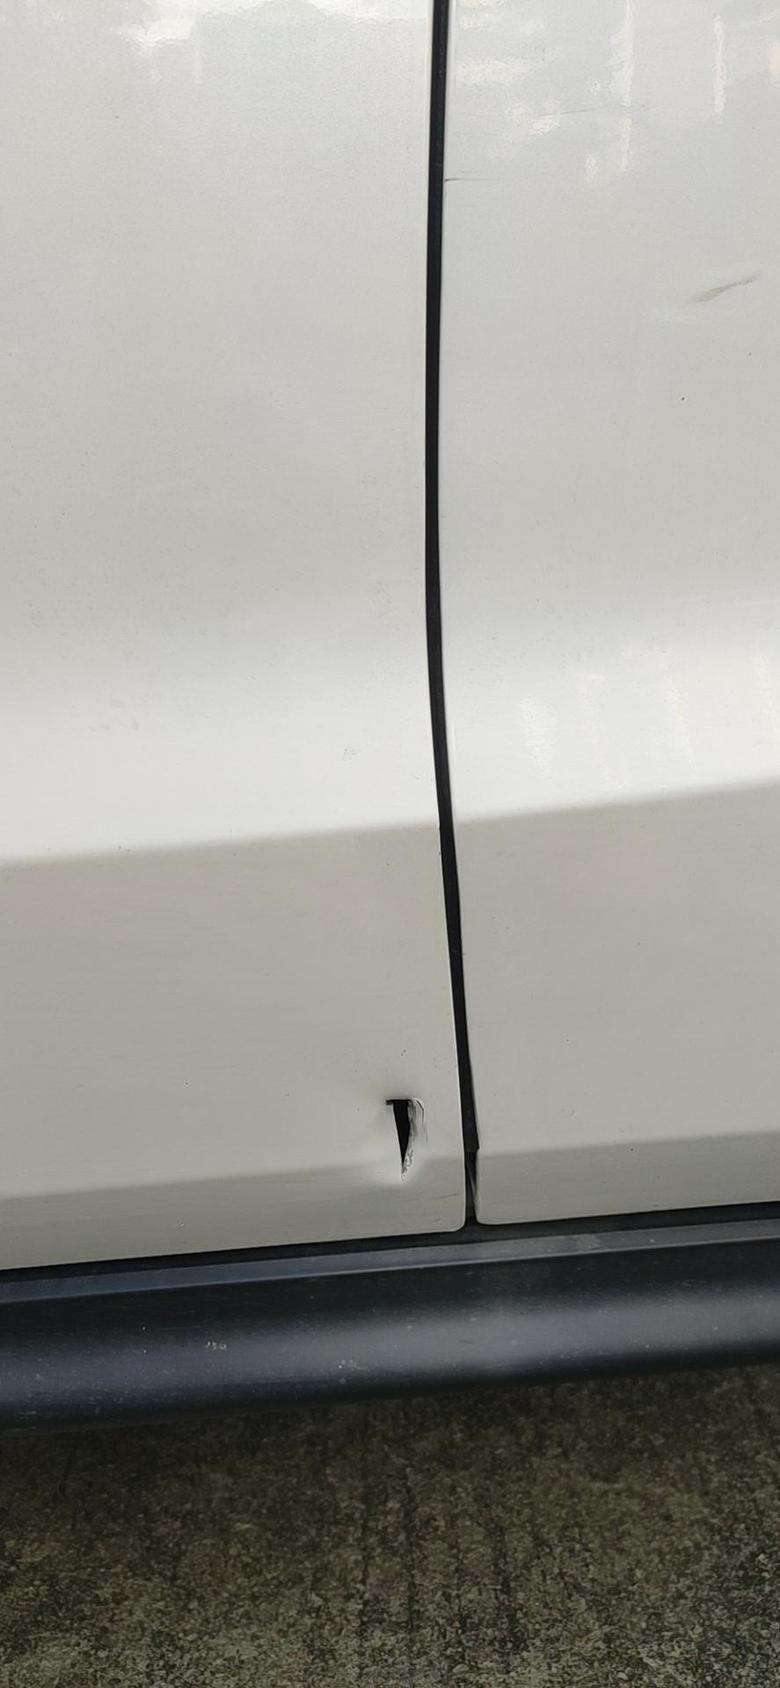 本田xr v 主驾驶位置的那个门，被一辆货车倒车的时候插穿了个洞，是换门还是钣金喷漆？里面会不会生锈？请教各位车友。